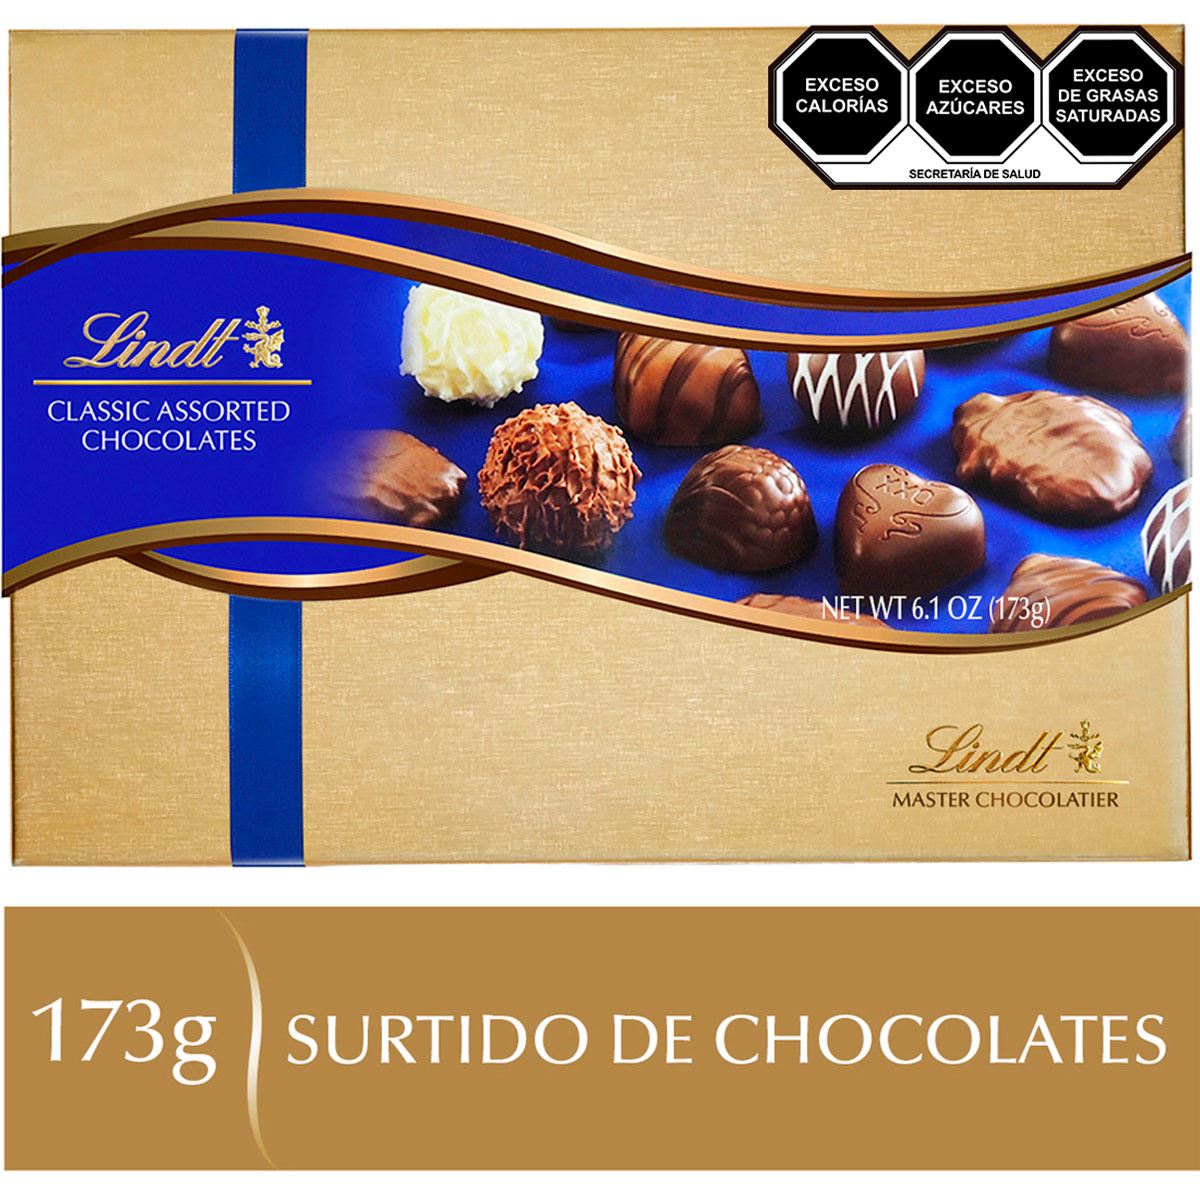 Surtido de Chocolates Classic Assorted Lindt 173g